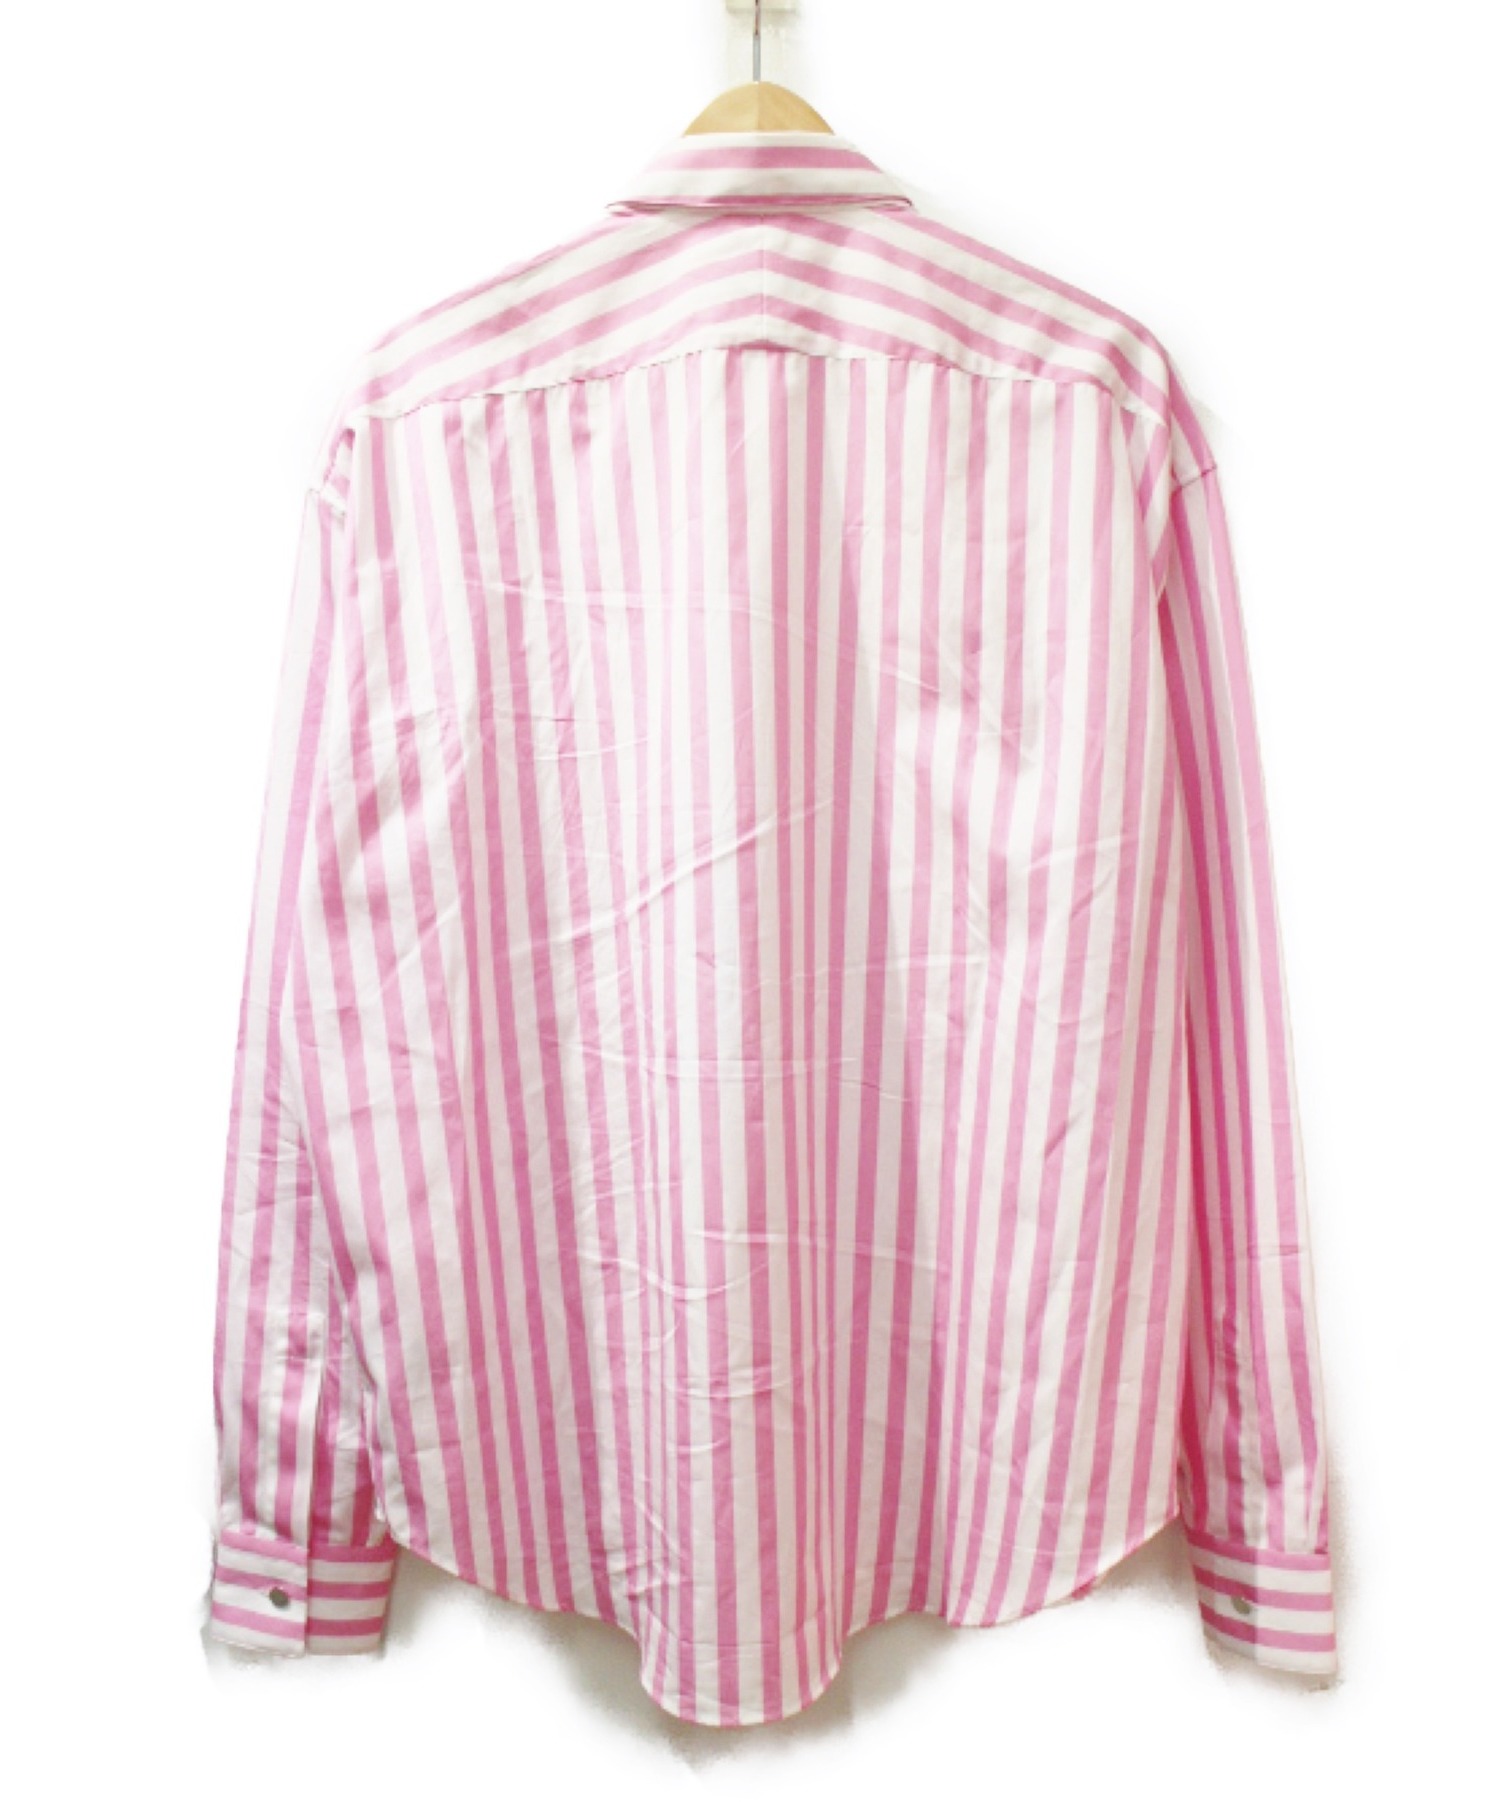 中古・古着通販】HERMES (エルメス) 20SS ストライプシャツ ピンク